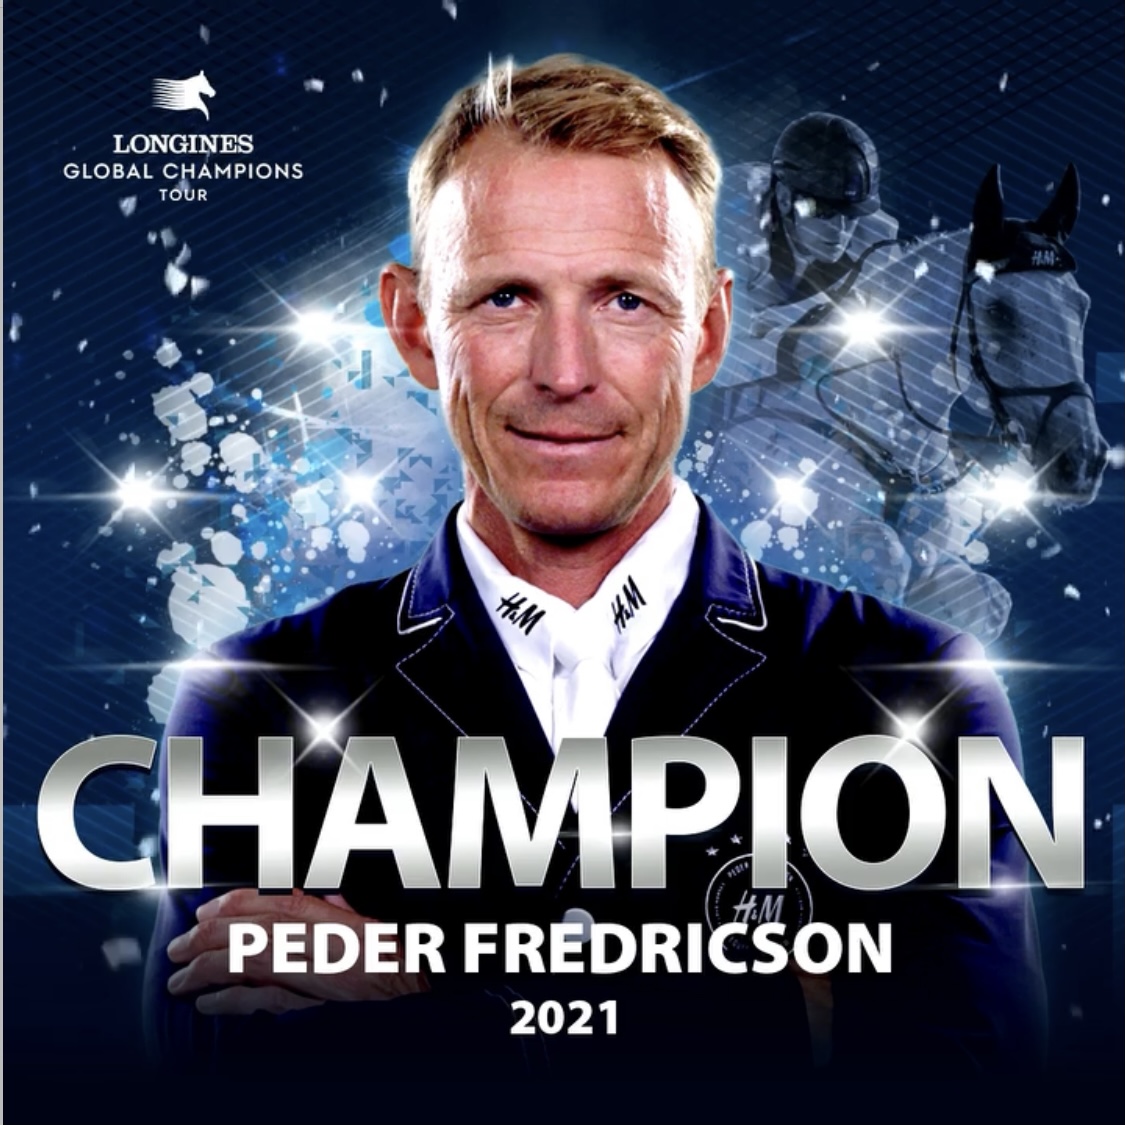 Peder Fredricson is de eindwinnaar van de Longines Global Champions Tour 2021